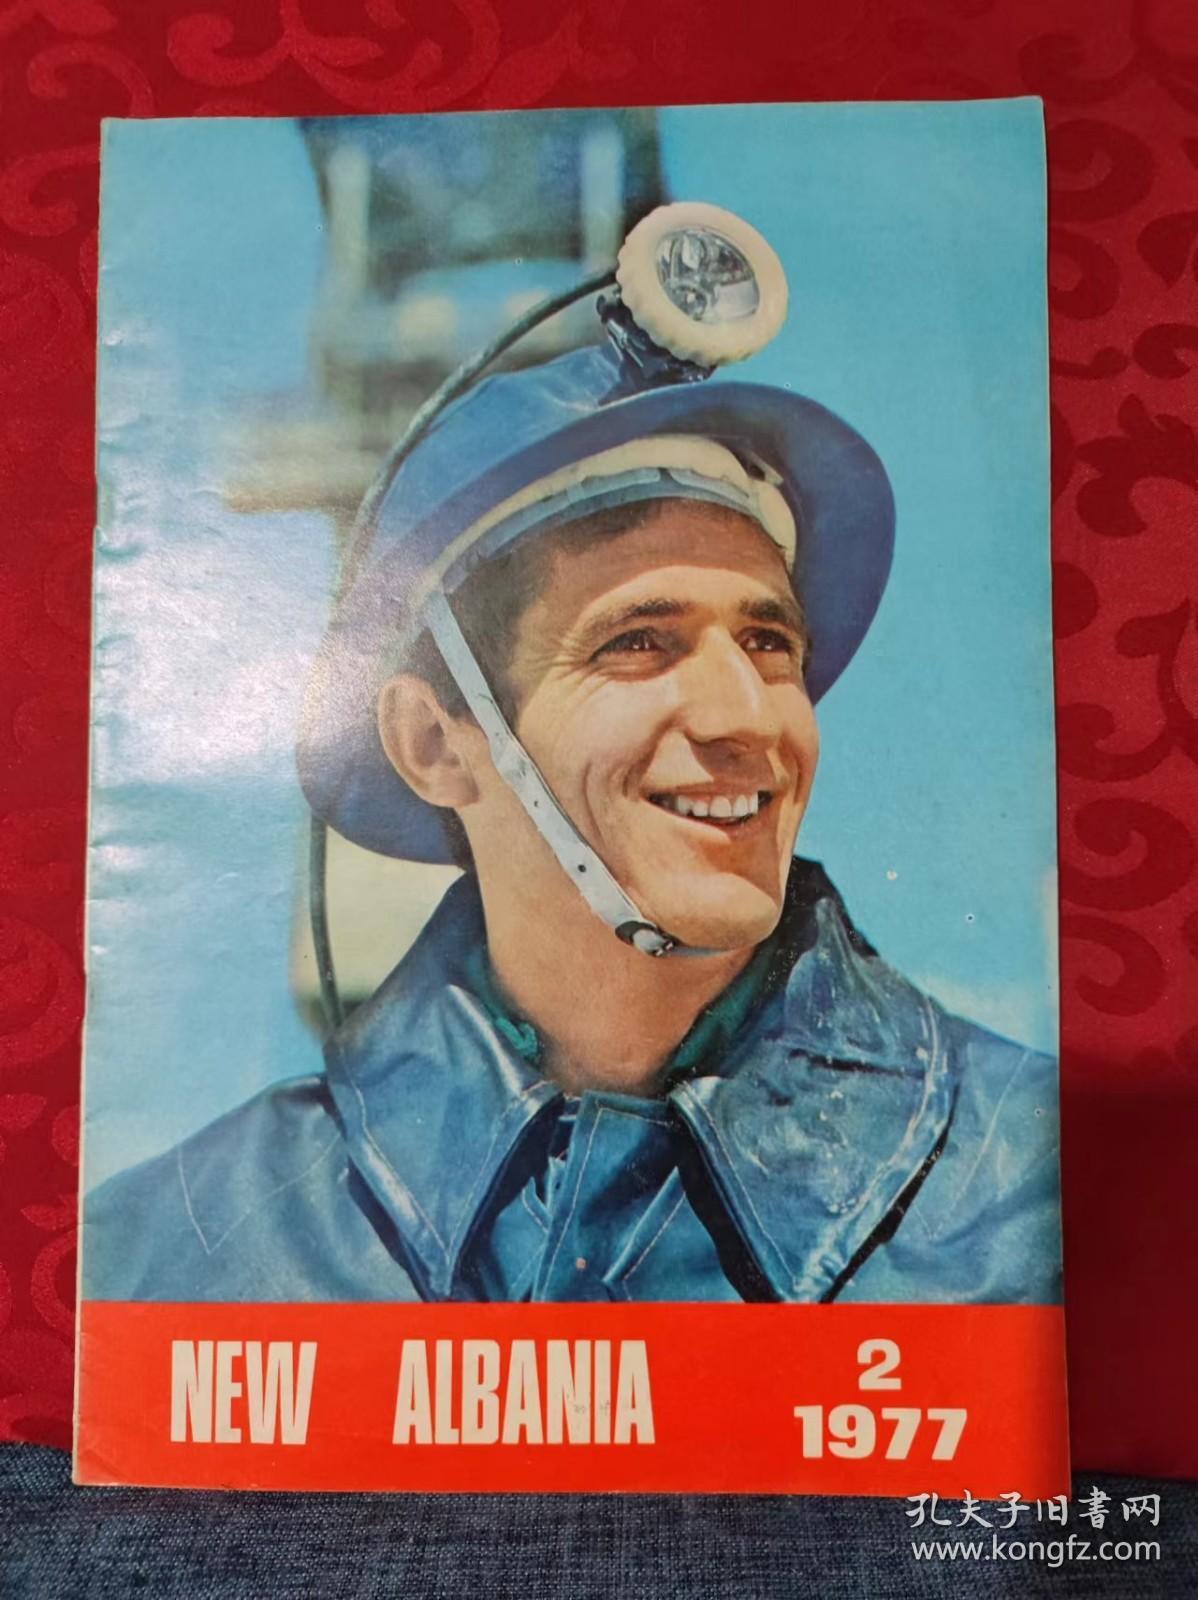 NEW ALBANIA 1977/2.